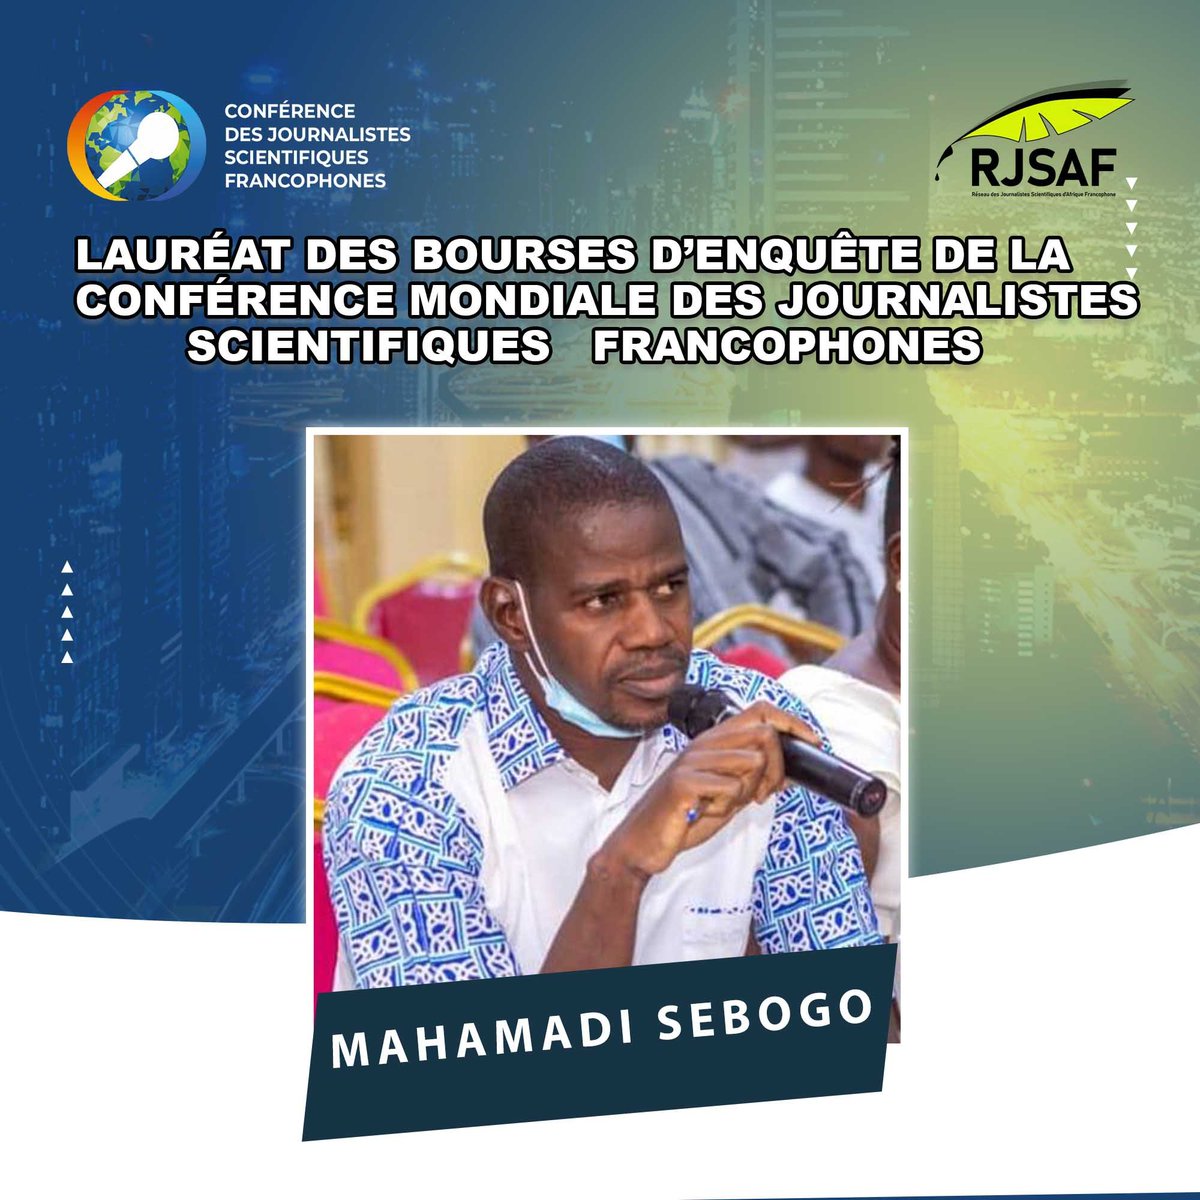 Mahamadi Sebogo est journaliste, chef desk au quotidien national burkinabè Sidwaya. Ses productions portent essentiellement sur l’économie, les finances, l’environnement, le climat et les sciences. Il est l'un des lauréats de la bourse offerte par notre réseau (RJSAF).